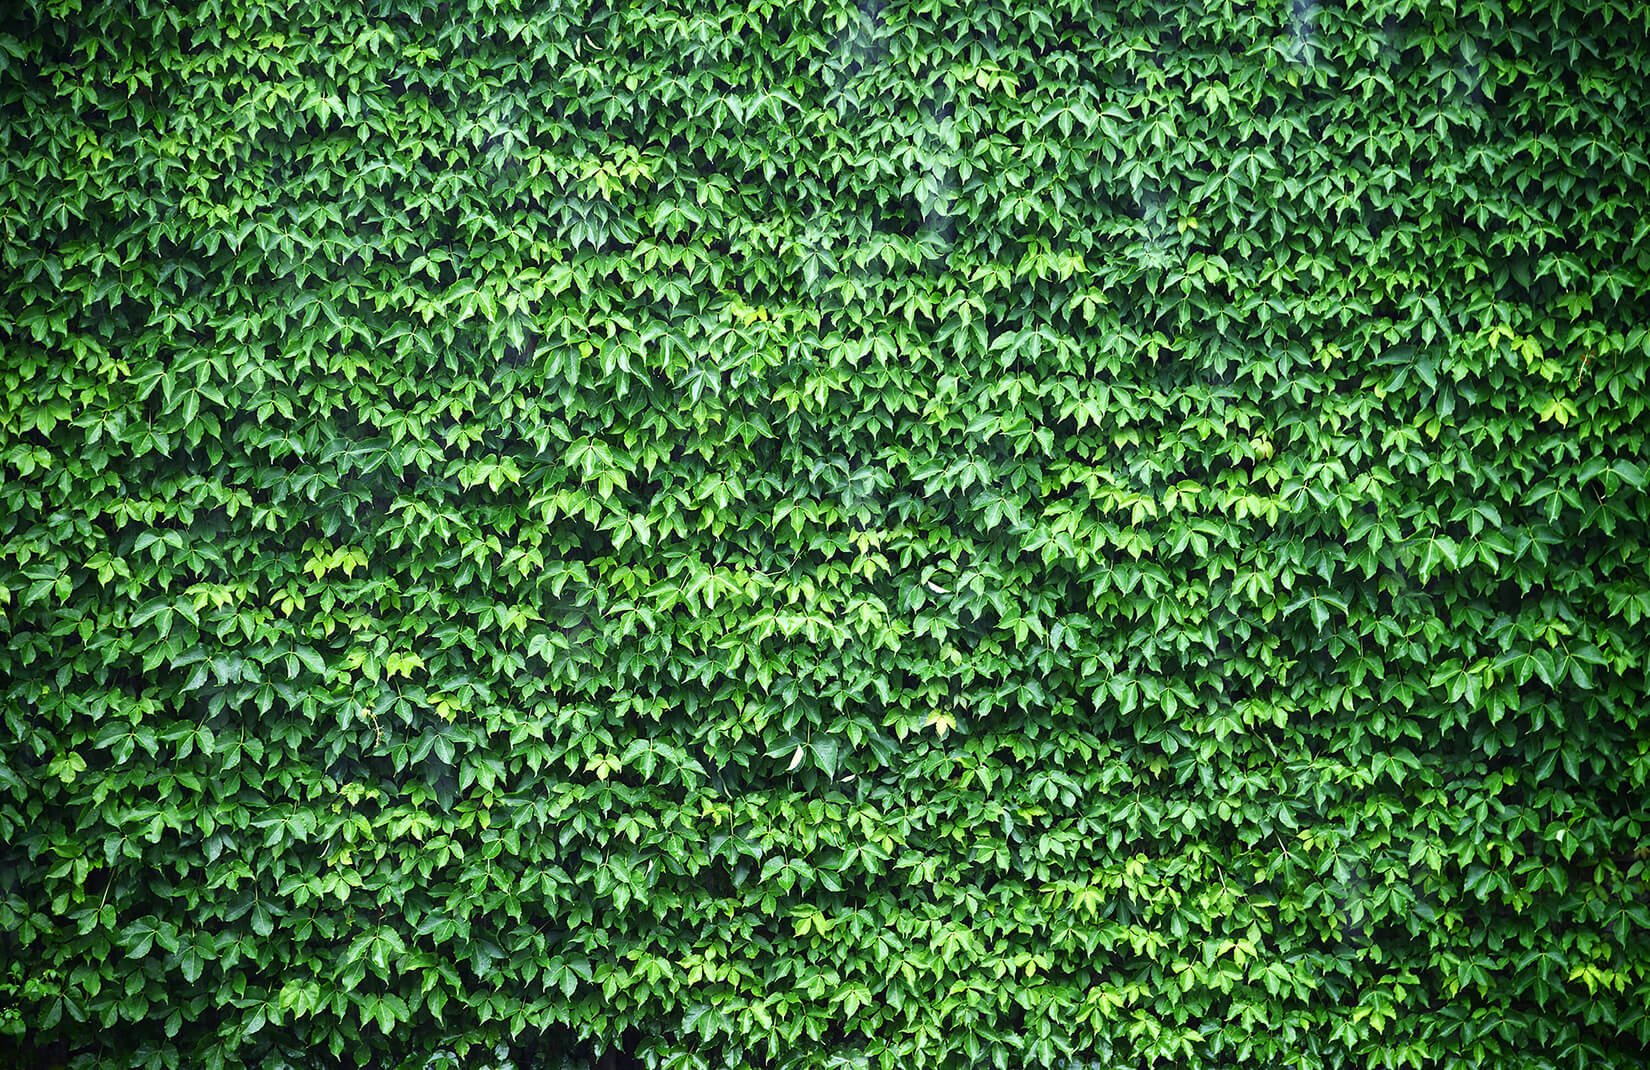 Wall of Green Ivy Wallpaper Wall Mural  MuralsWallpaper.co.uk